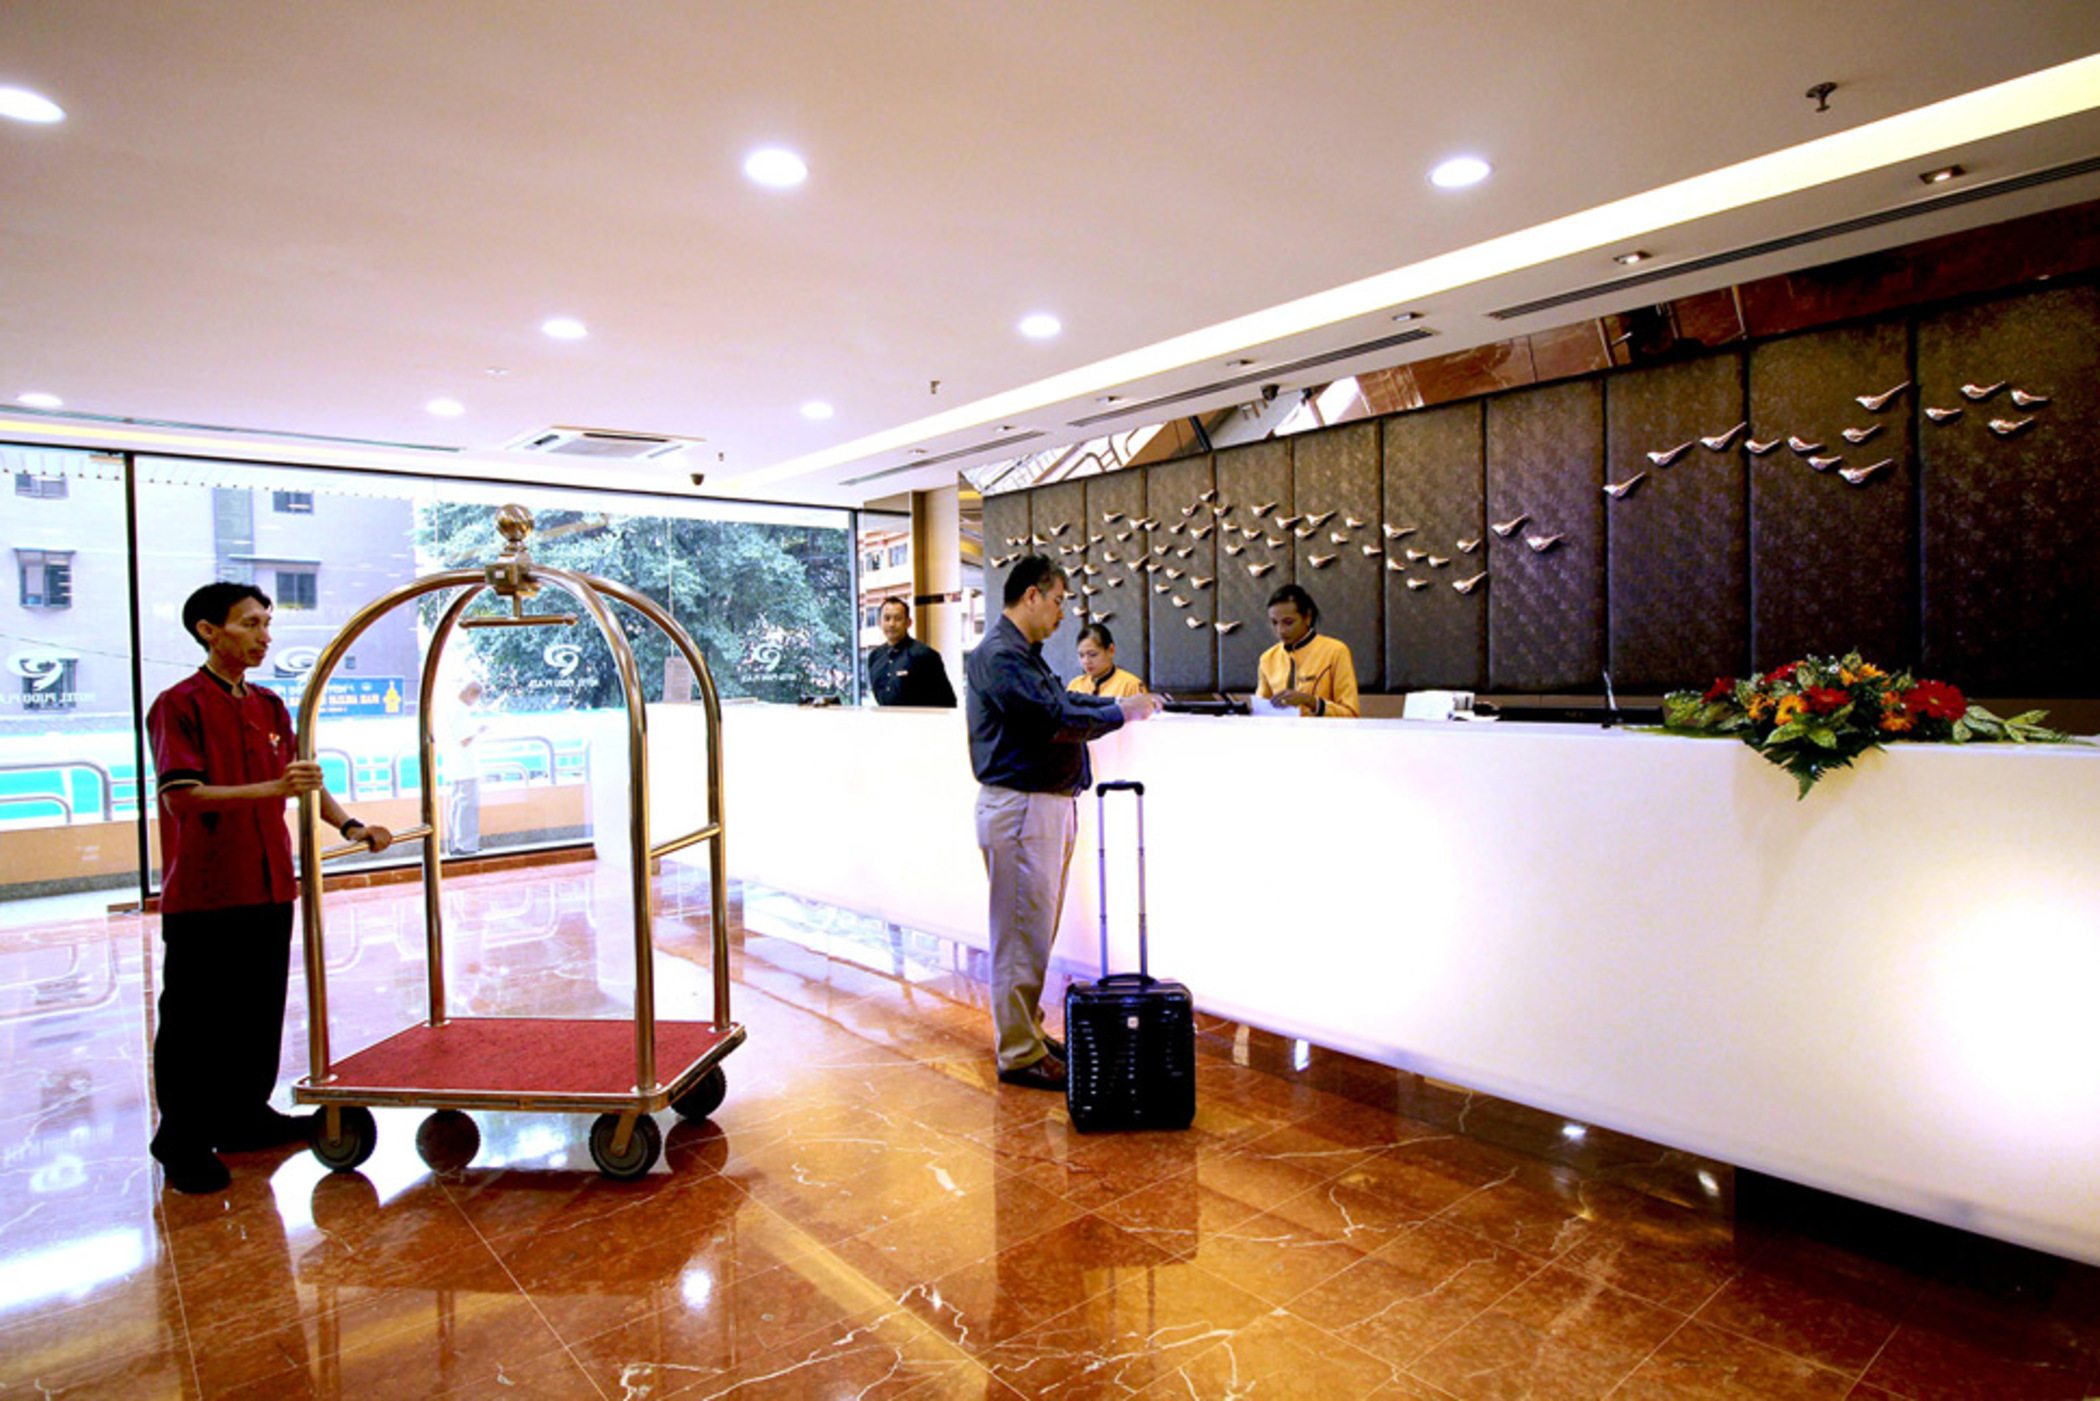 تصاویر Hotel Hotel Pudu Plaza Kuala Lumpur